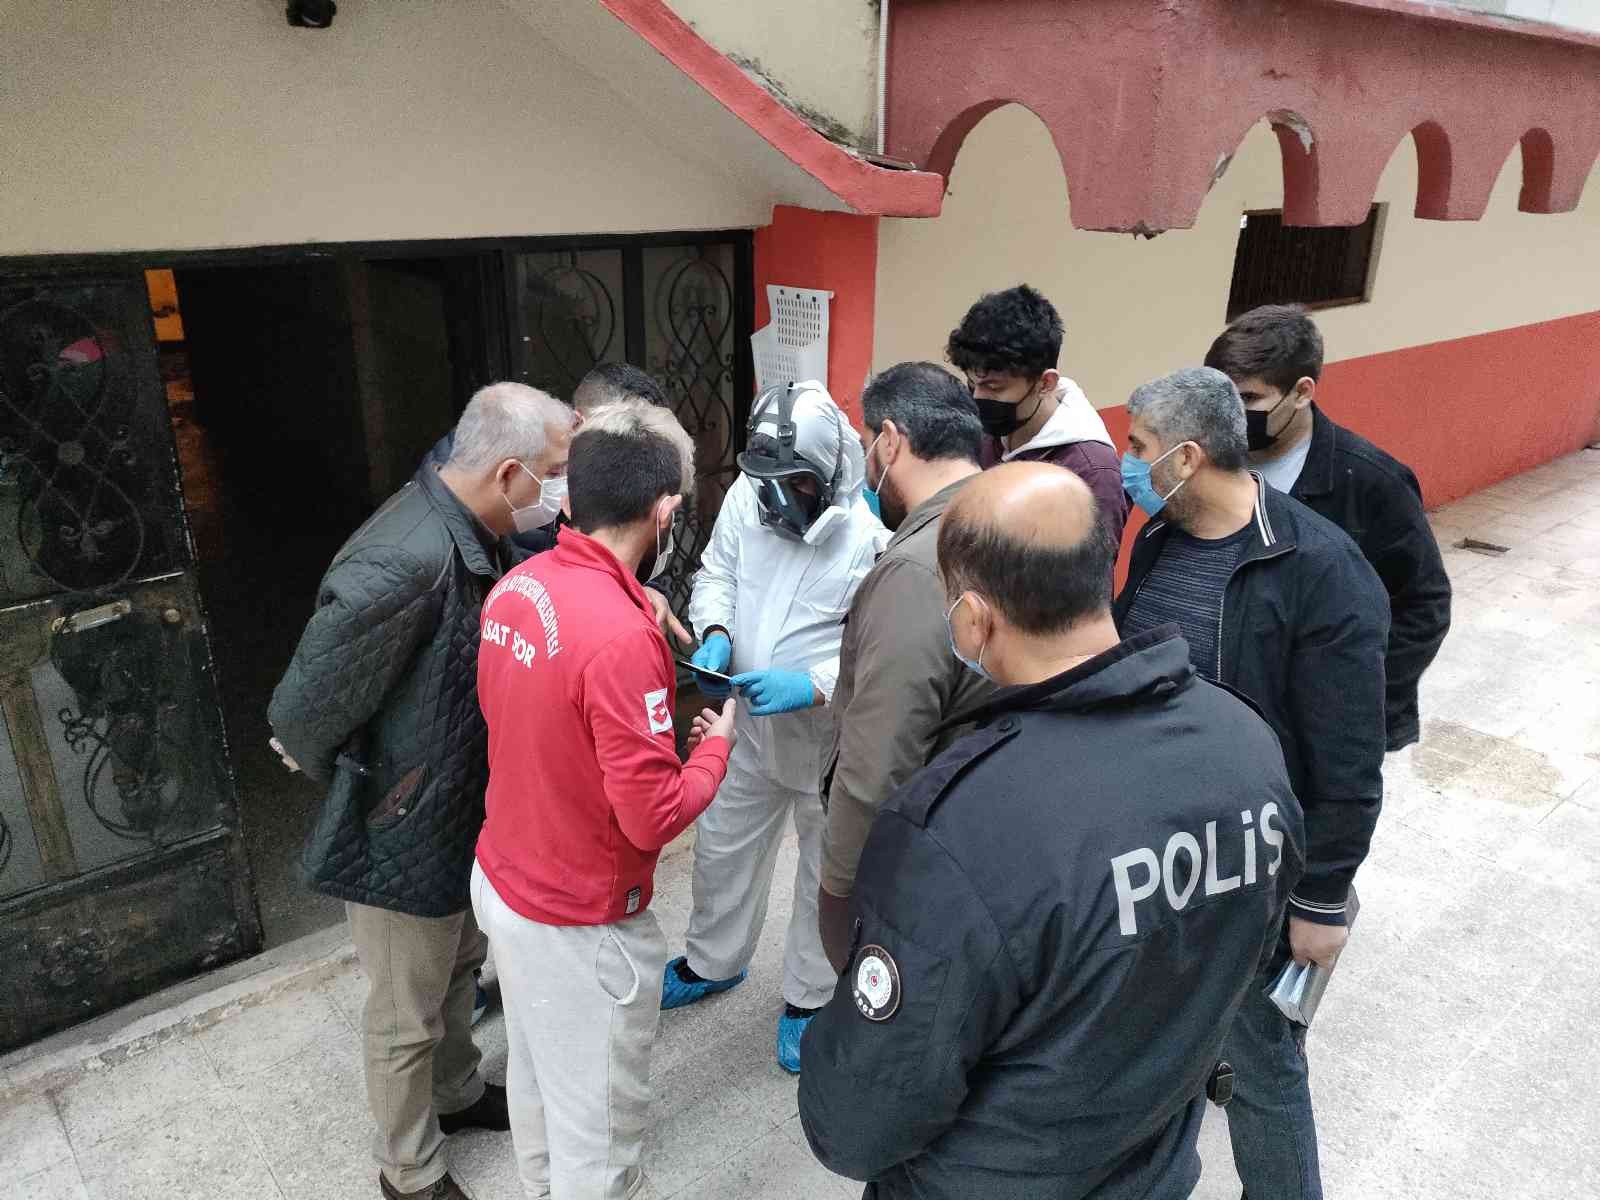 Antalya’da daireden yayılan koku yalnız yaşayan adamın öldüğünü ortaya çıkardı